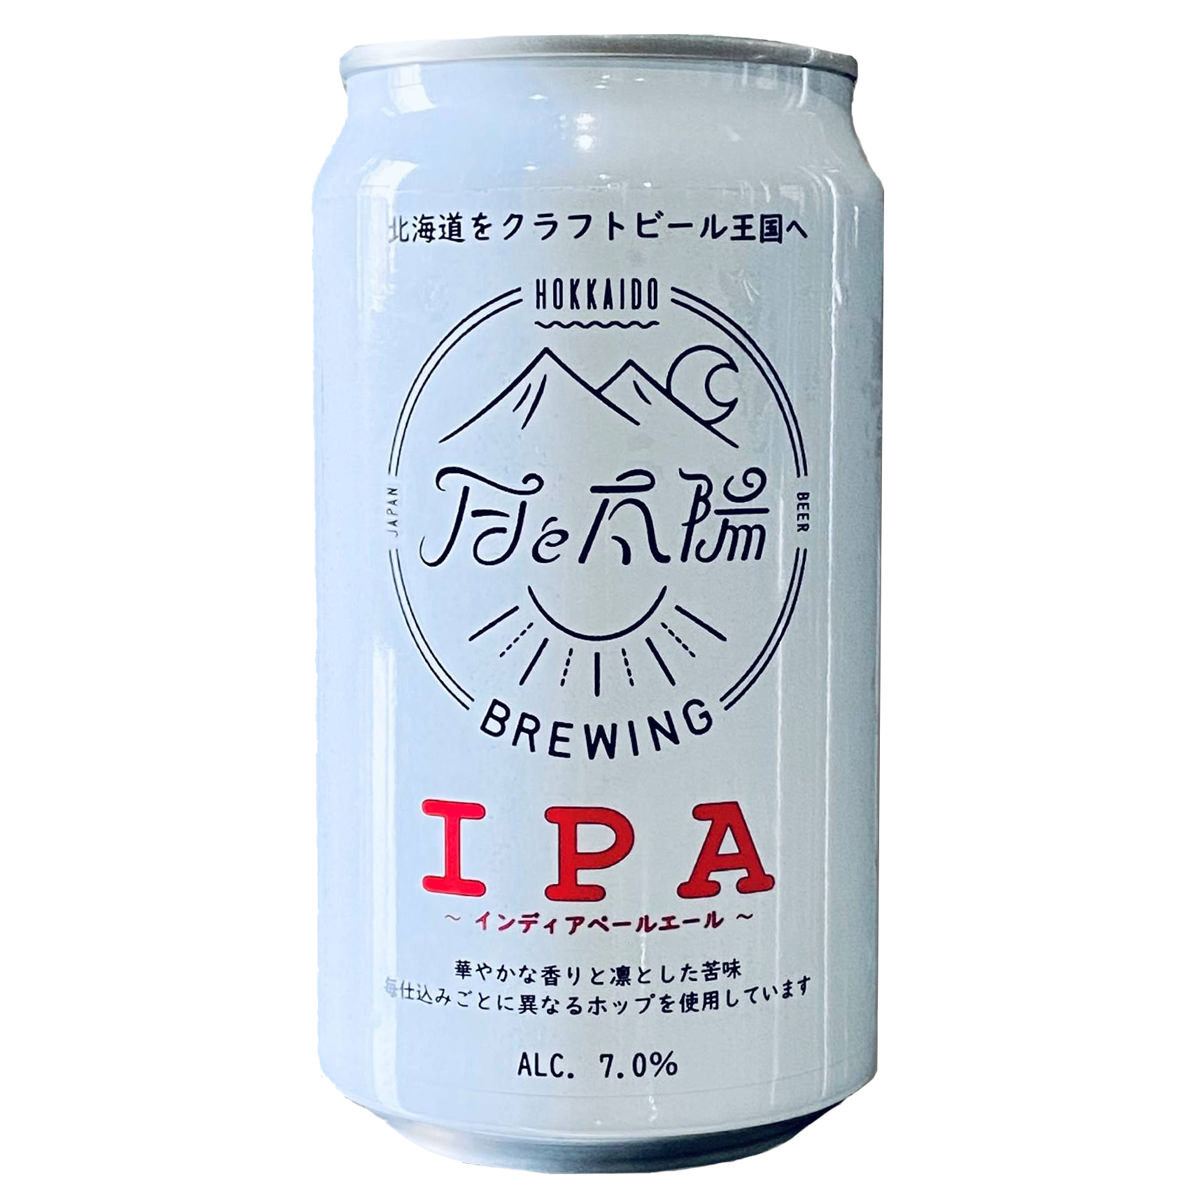 月と太陽BREWING IPA 6缶セット ビール 北海道 クラフトビール 国産 お酒 アルコール 缶ビール 詰め合わせ ご当地ビール